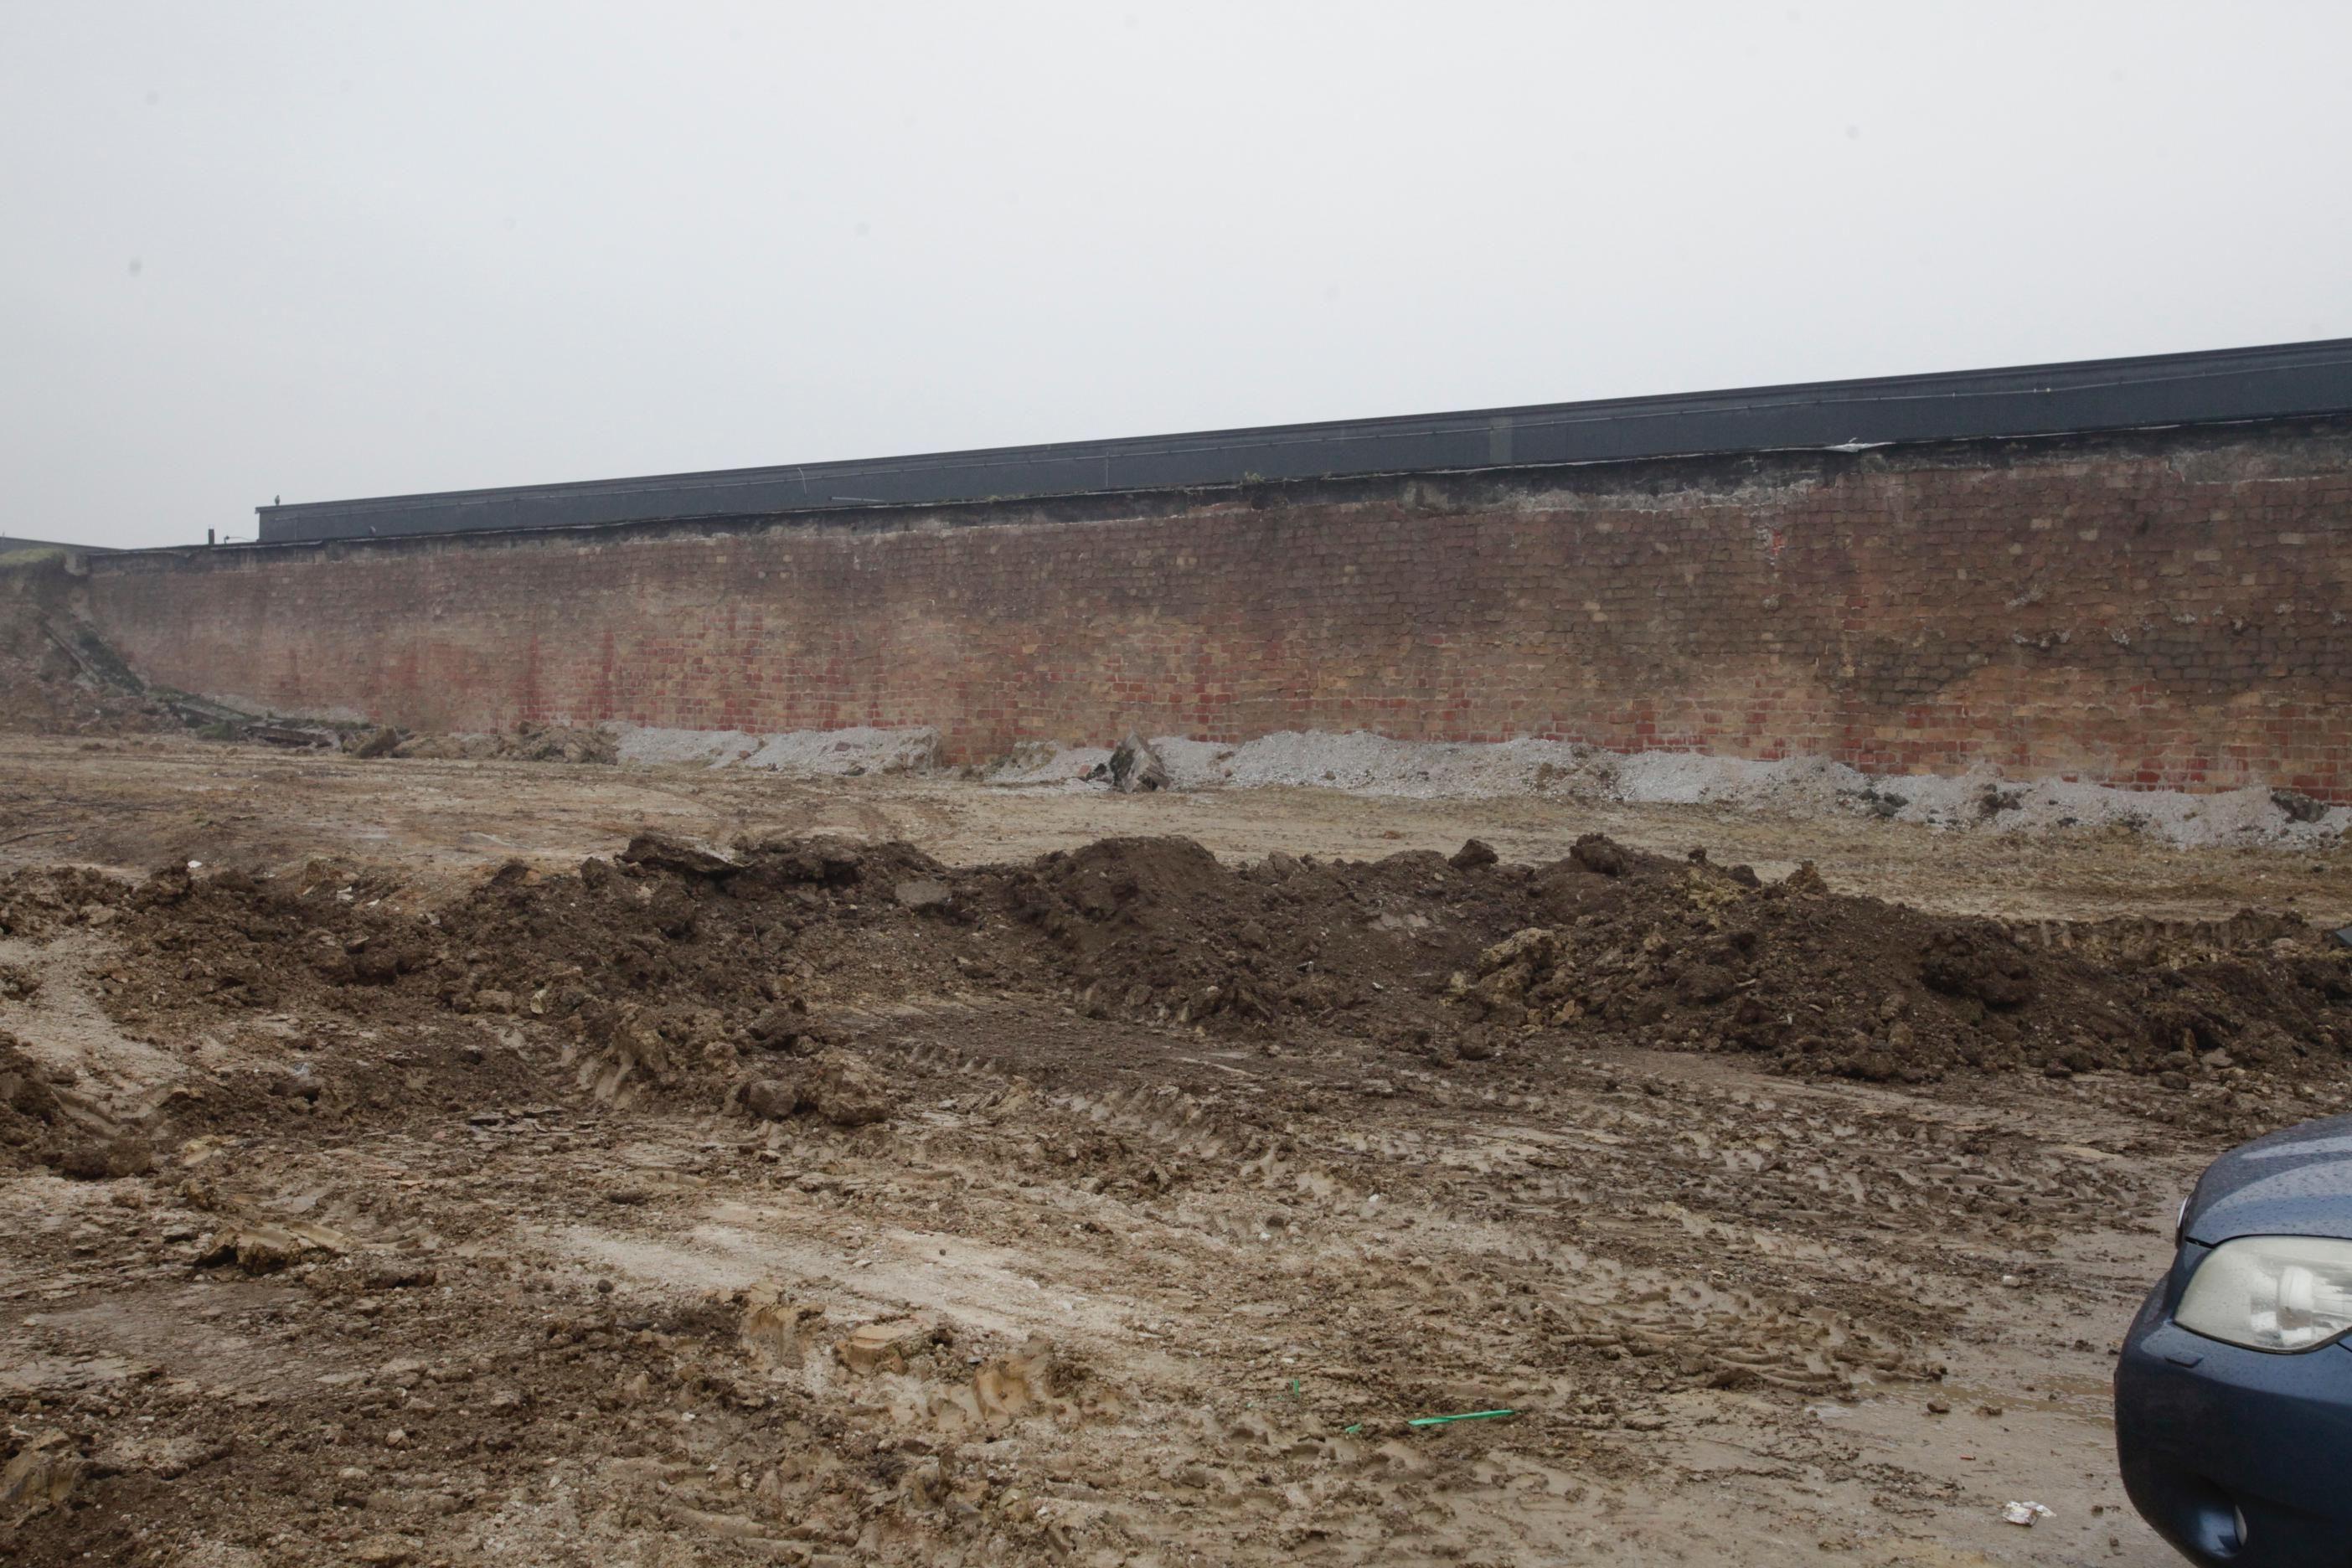 Teren na kojem će se graditi krematorij uveliko se čisti (Foto: S. Saletović) - Avaz